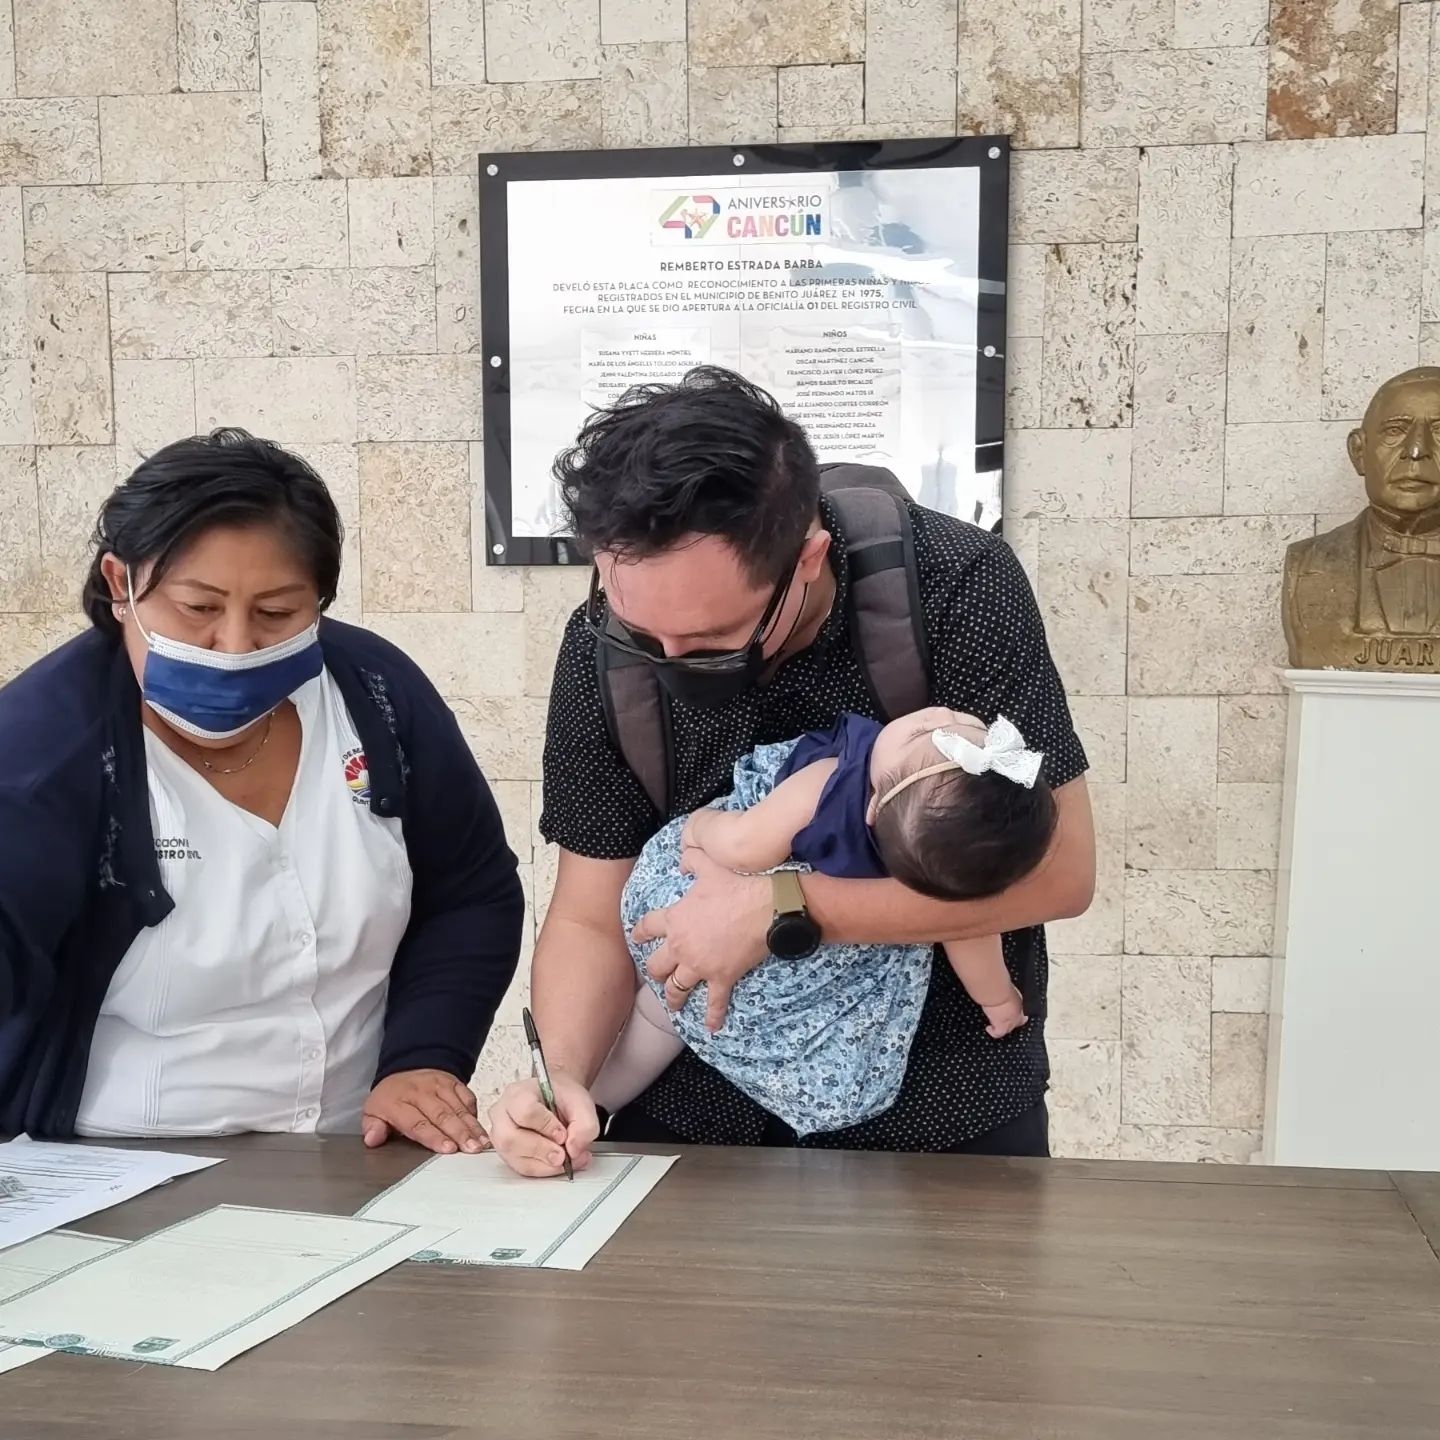 El jueves pasado, Fausto y Abraham acudieron al registro civil de Cancún a registrar a sus hijas gemelas con los apellidos de ambos, tras ganar una serie de amparos